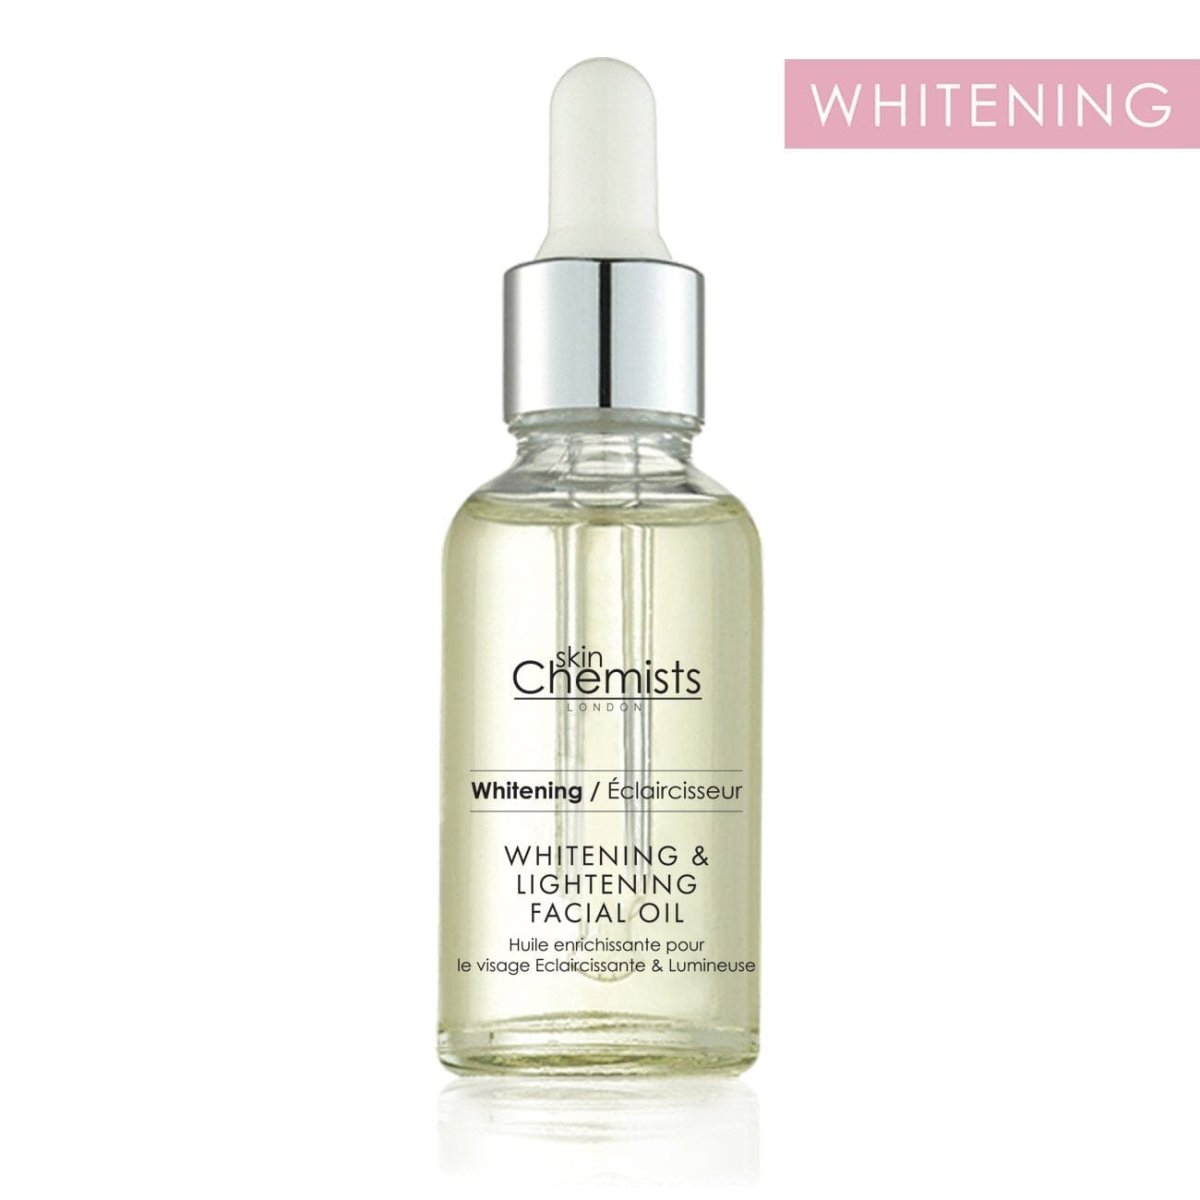 Whitening & Lightening Facial Oil 30ml - skinChemists